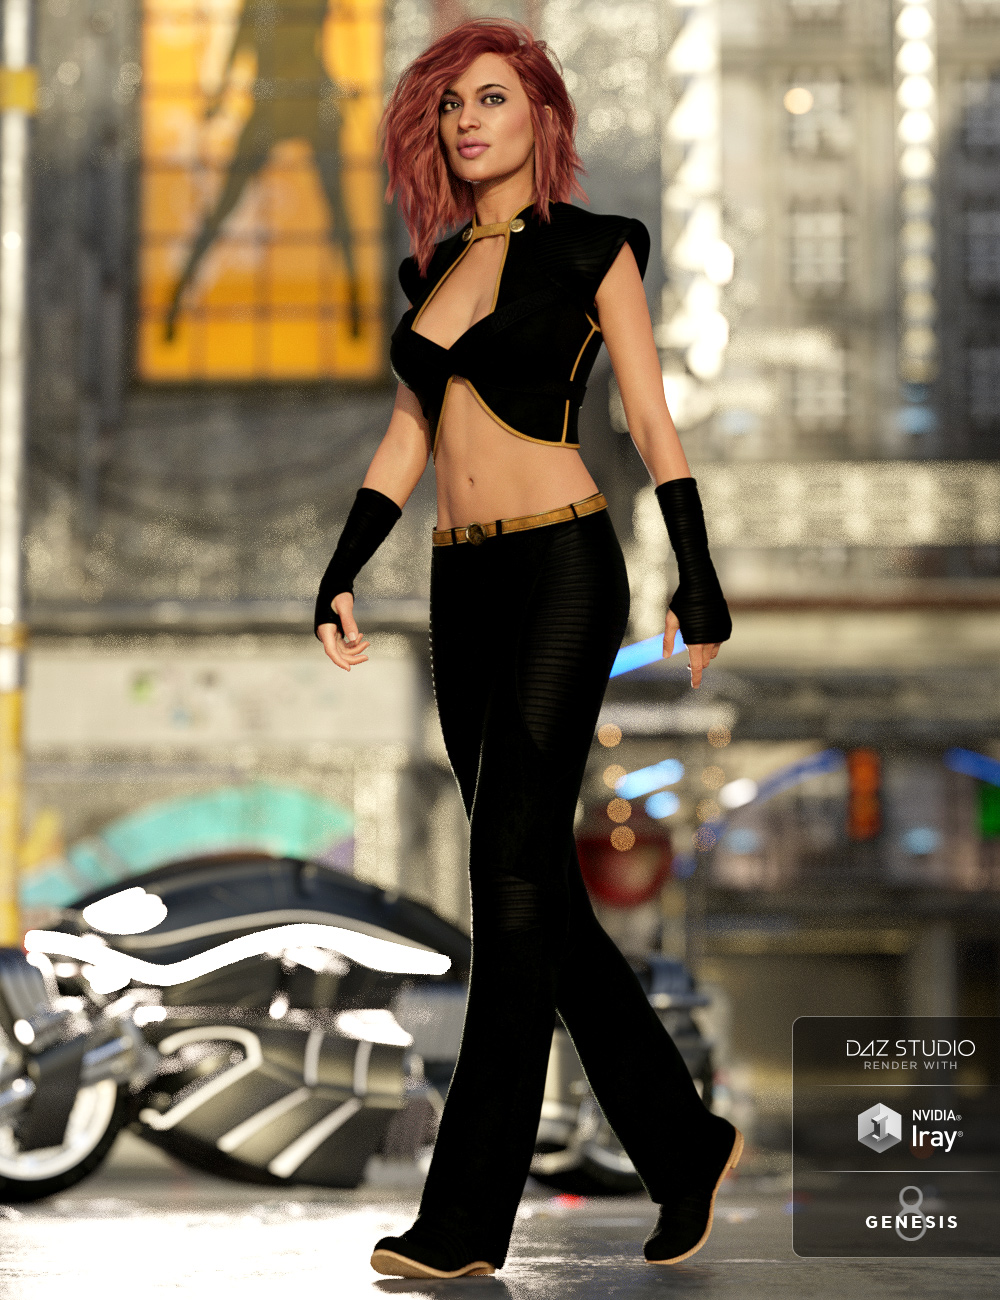 Legend Outfit Textures by: Shox-Design, 3D Models by Daz 3D